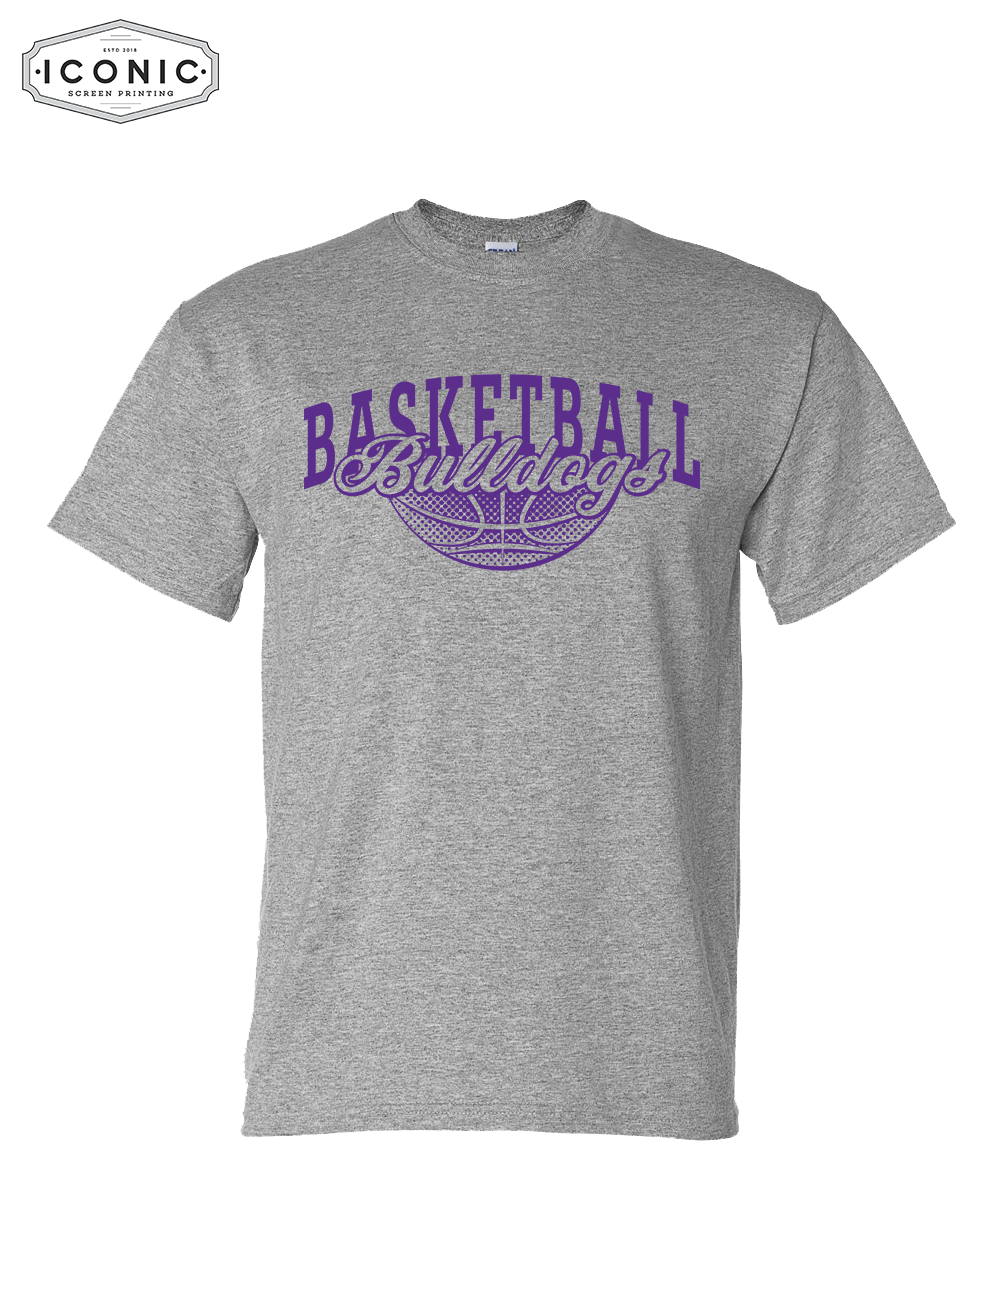 Bulldogs Basketball - DryBlend T-shirt